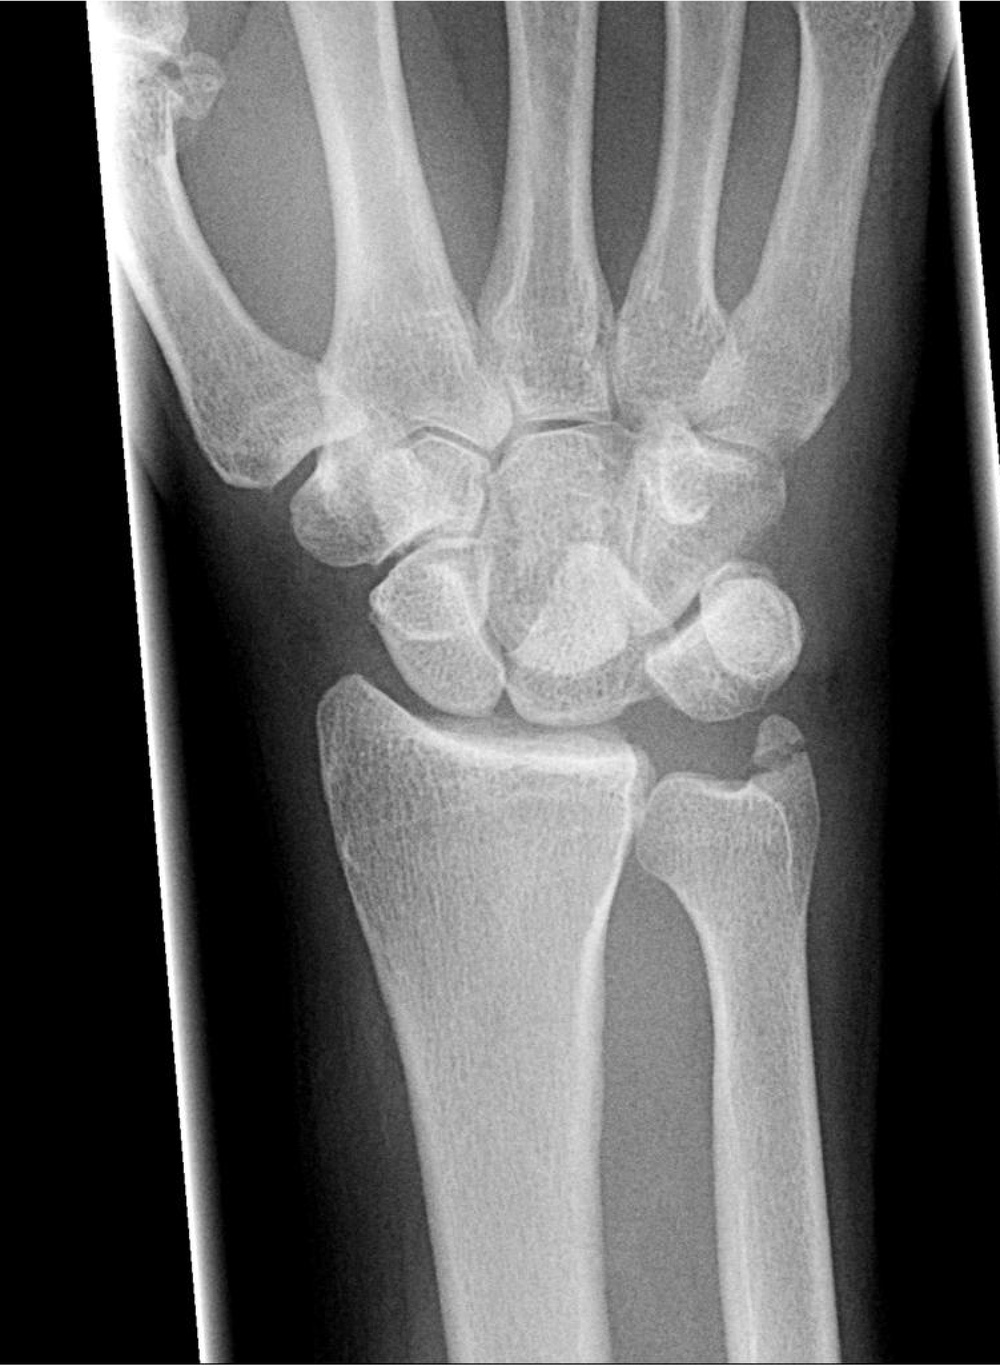 AP Wrist X-Ray